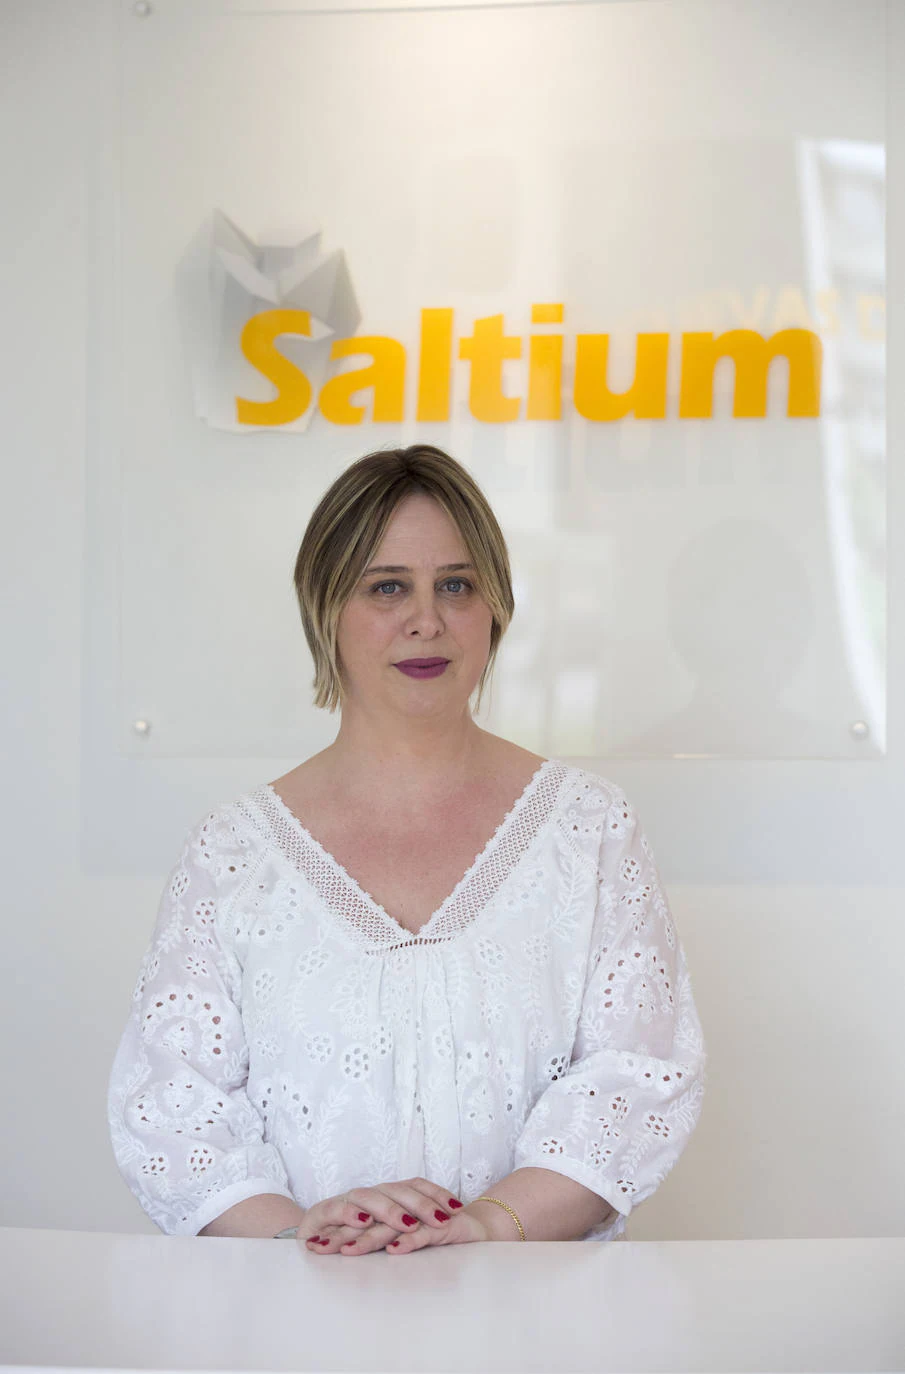 El centro Saltium, ubicado en Peñacastillo, celebra su primer aniversario con excelentes resultados, especialmente en patologías respiratorias o dermatológicas